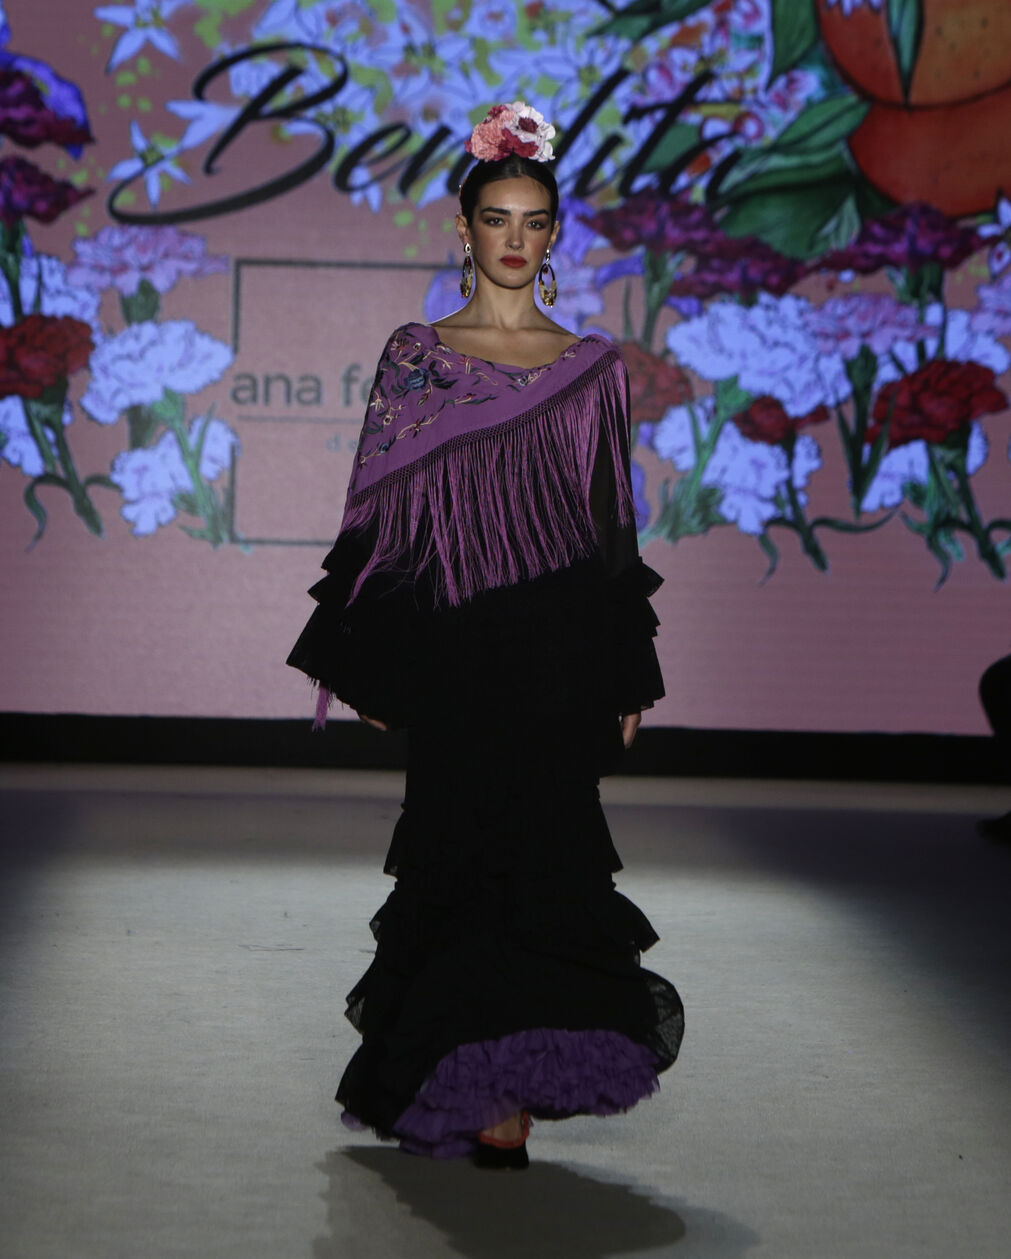 El desfile de Ana Ferreiro en We Love Flamenco 2022, todas las fotos.